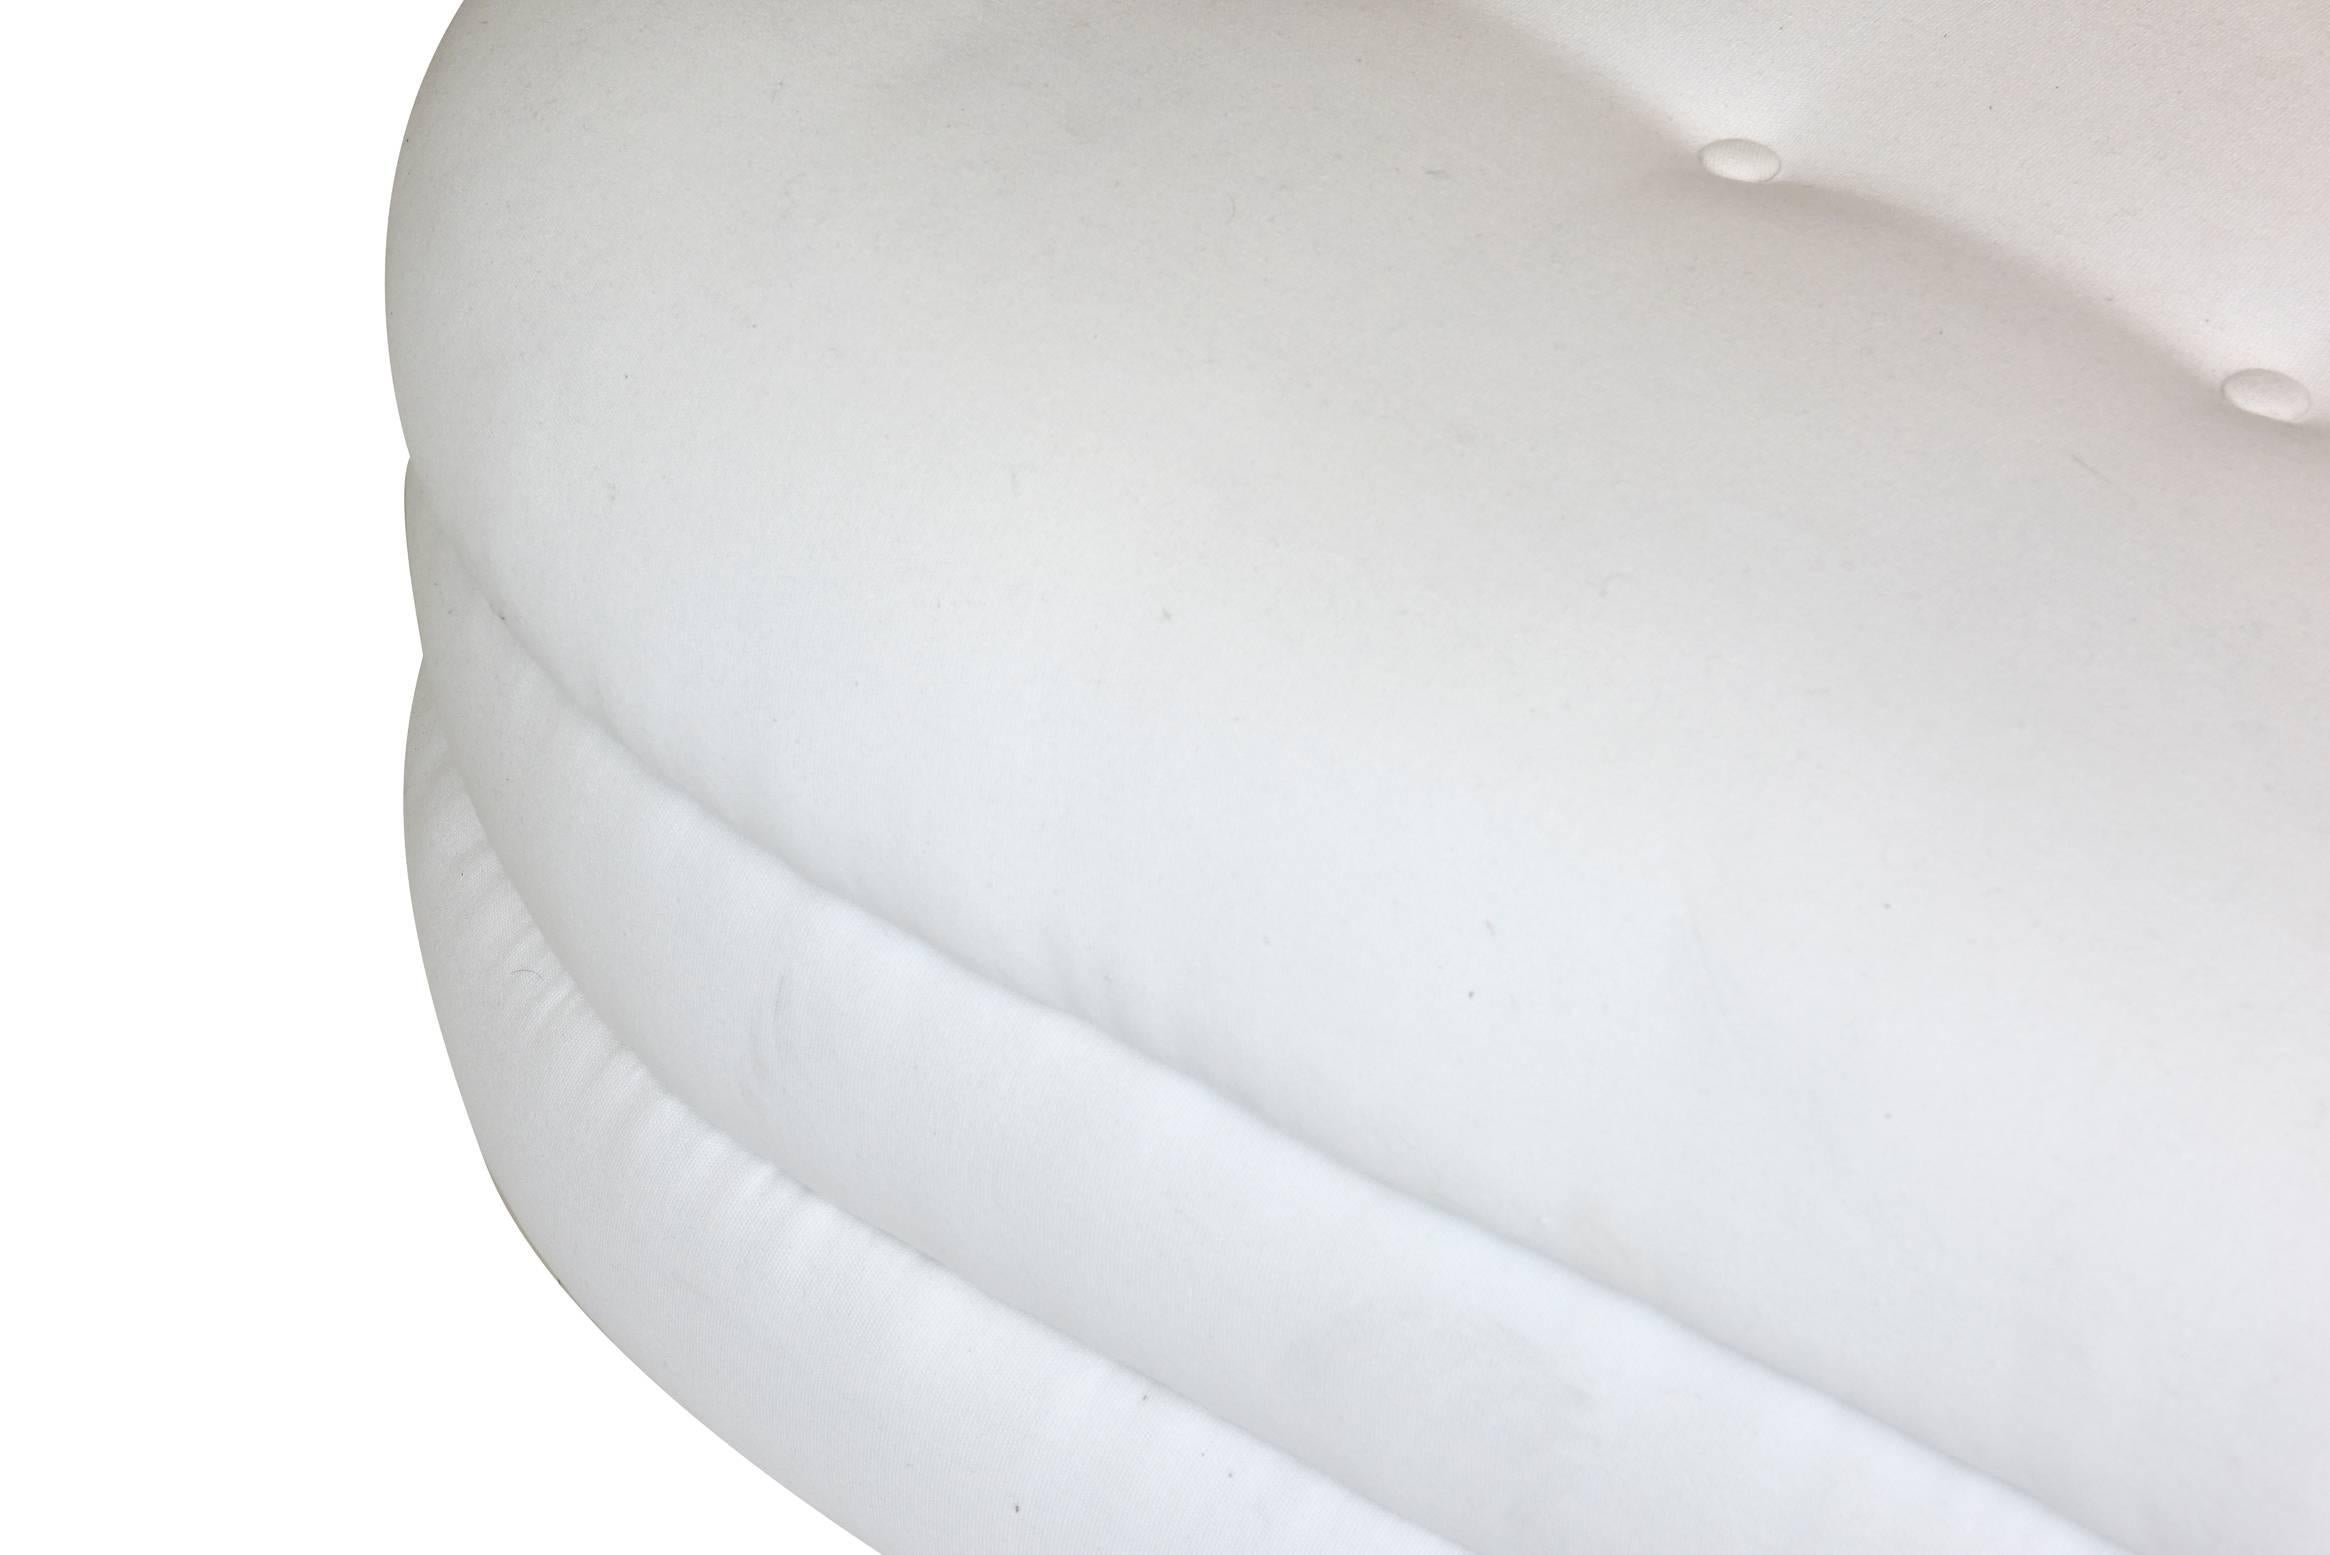 Fin du 20e siècle Banc et ou canapé sur mesure en toile de canard biomorphe blanche tapissée en vente